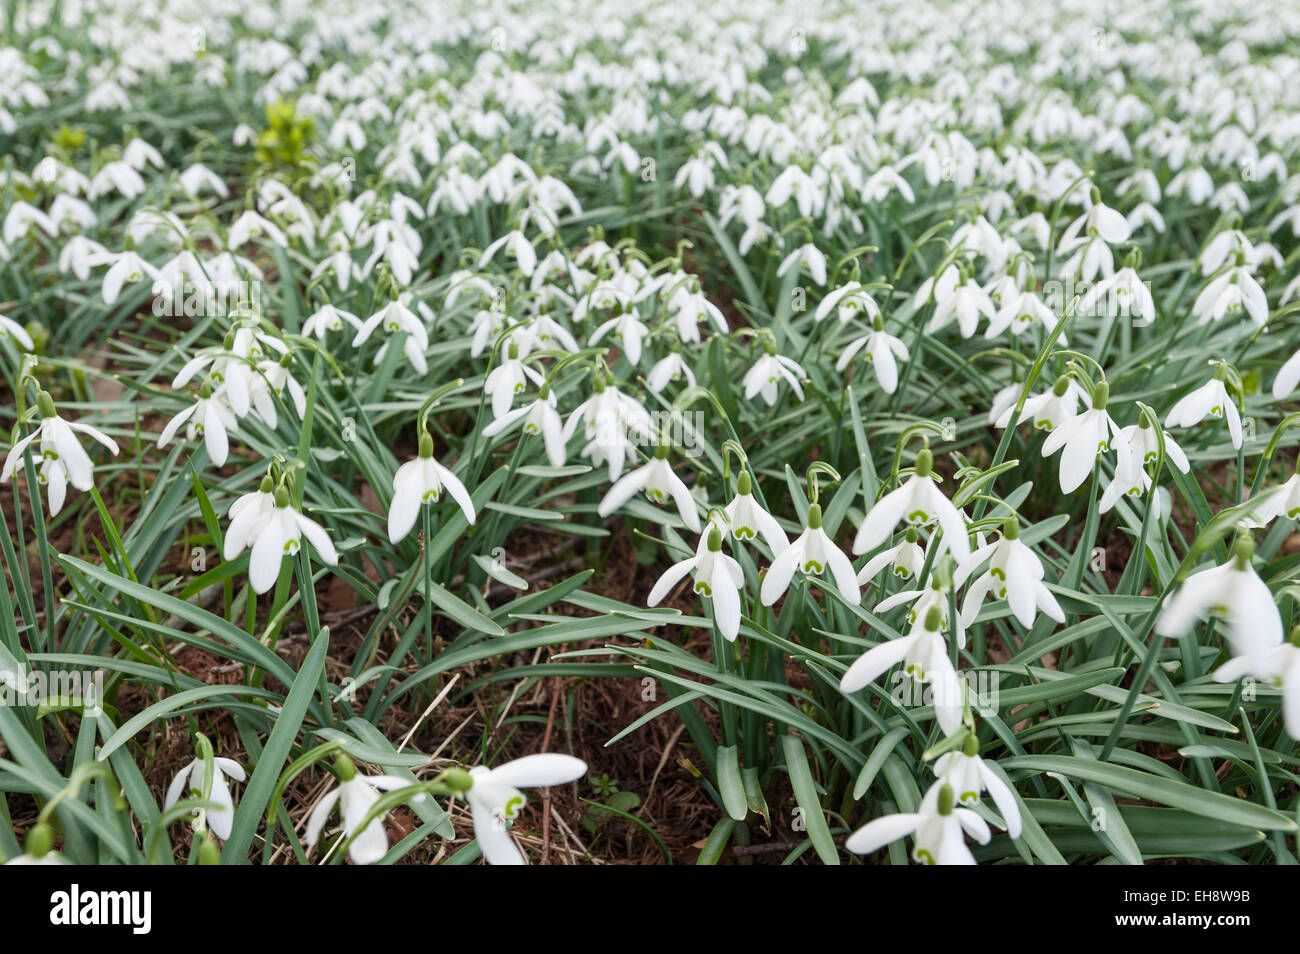 Primera flor de año nuevo, cerca de común snowdrop flores en una pradera de delicadas flores blancas Foto de stock